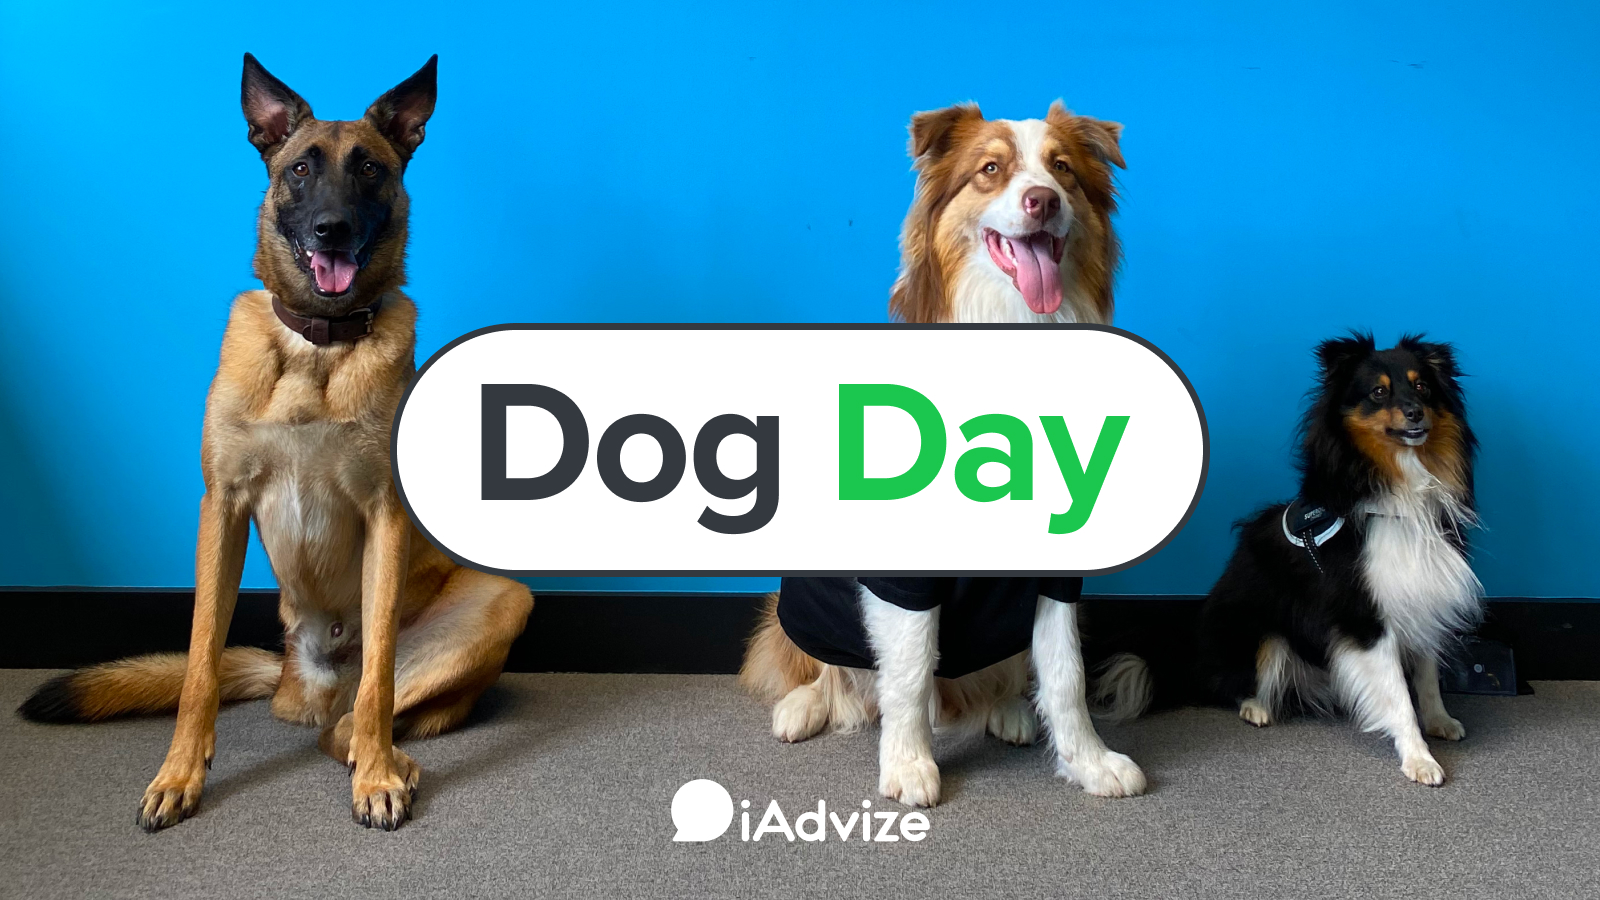 Read full post: Dog Day @iAdvize : les bienfaits d’emmener son chien au travail